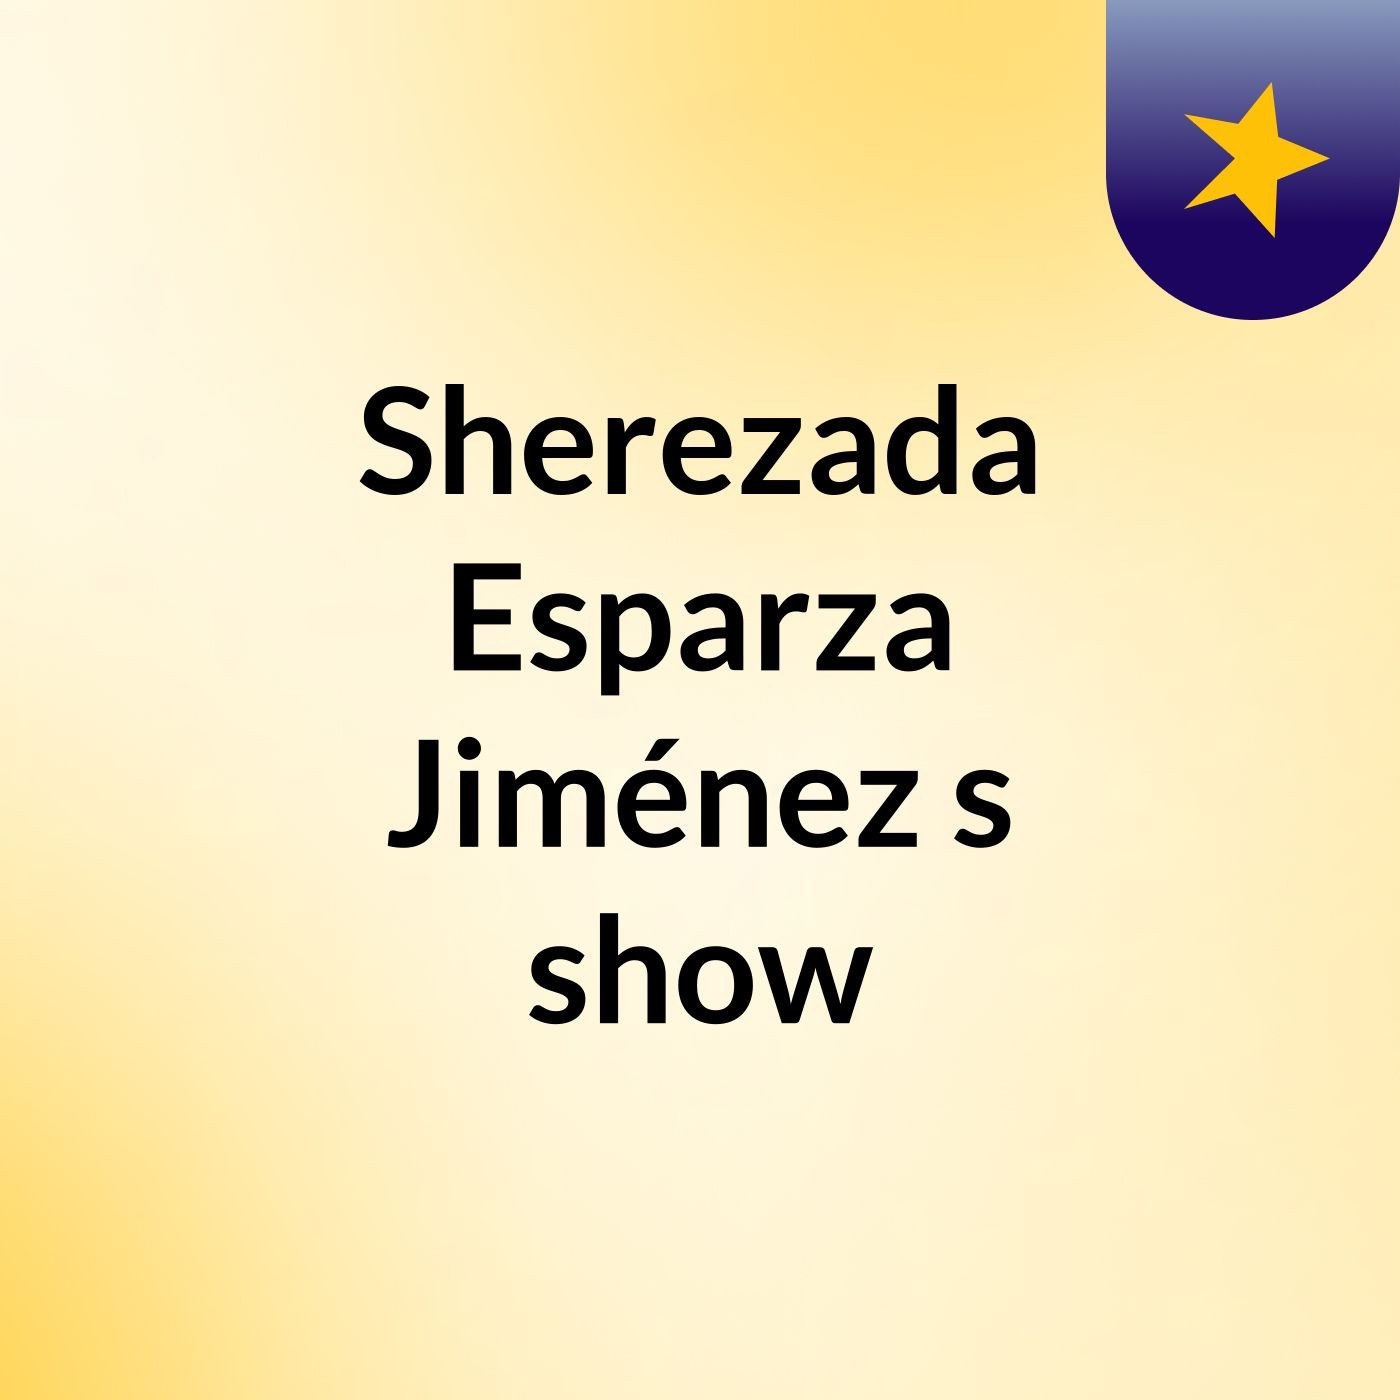 Sherezada Esparza Jiménez's show